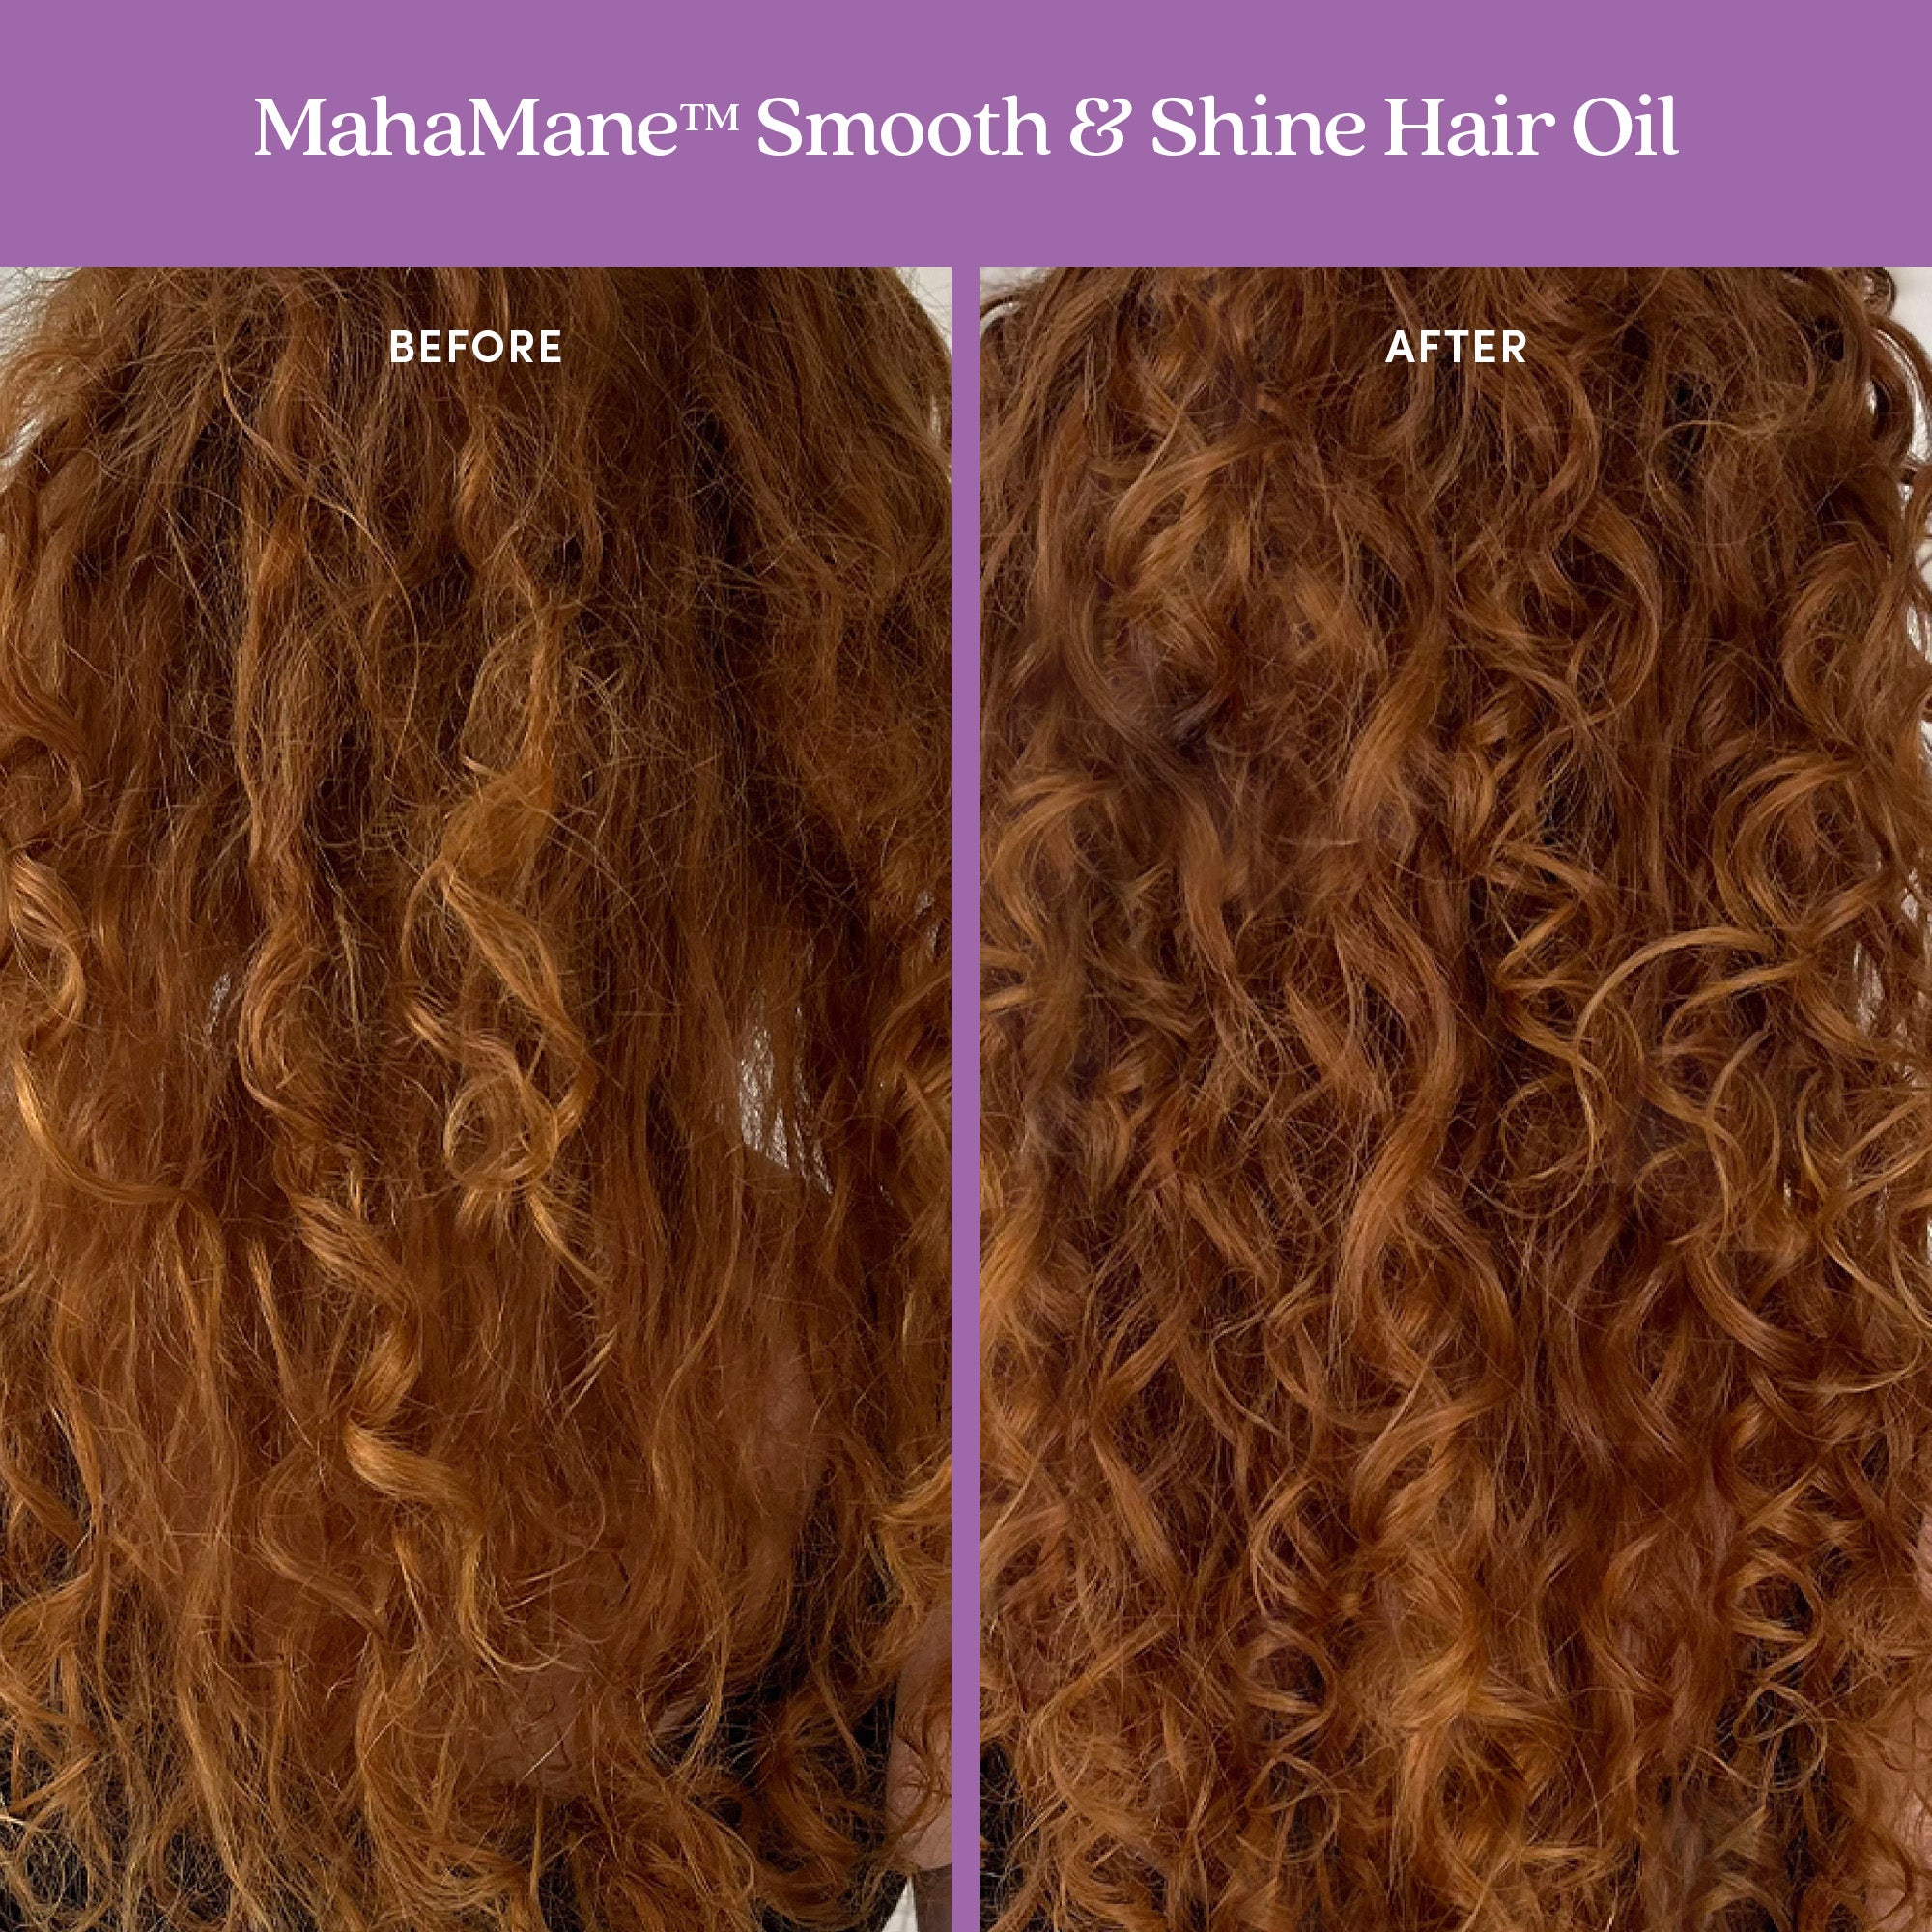 MahaMane? Smooth & Shine Hair Oil